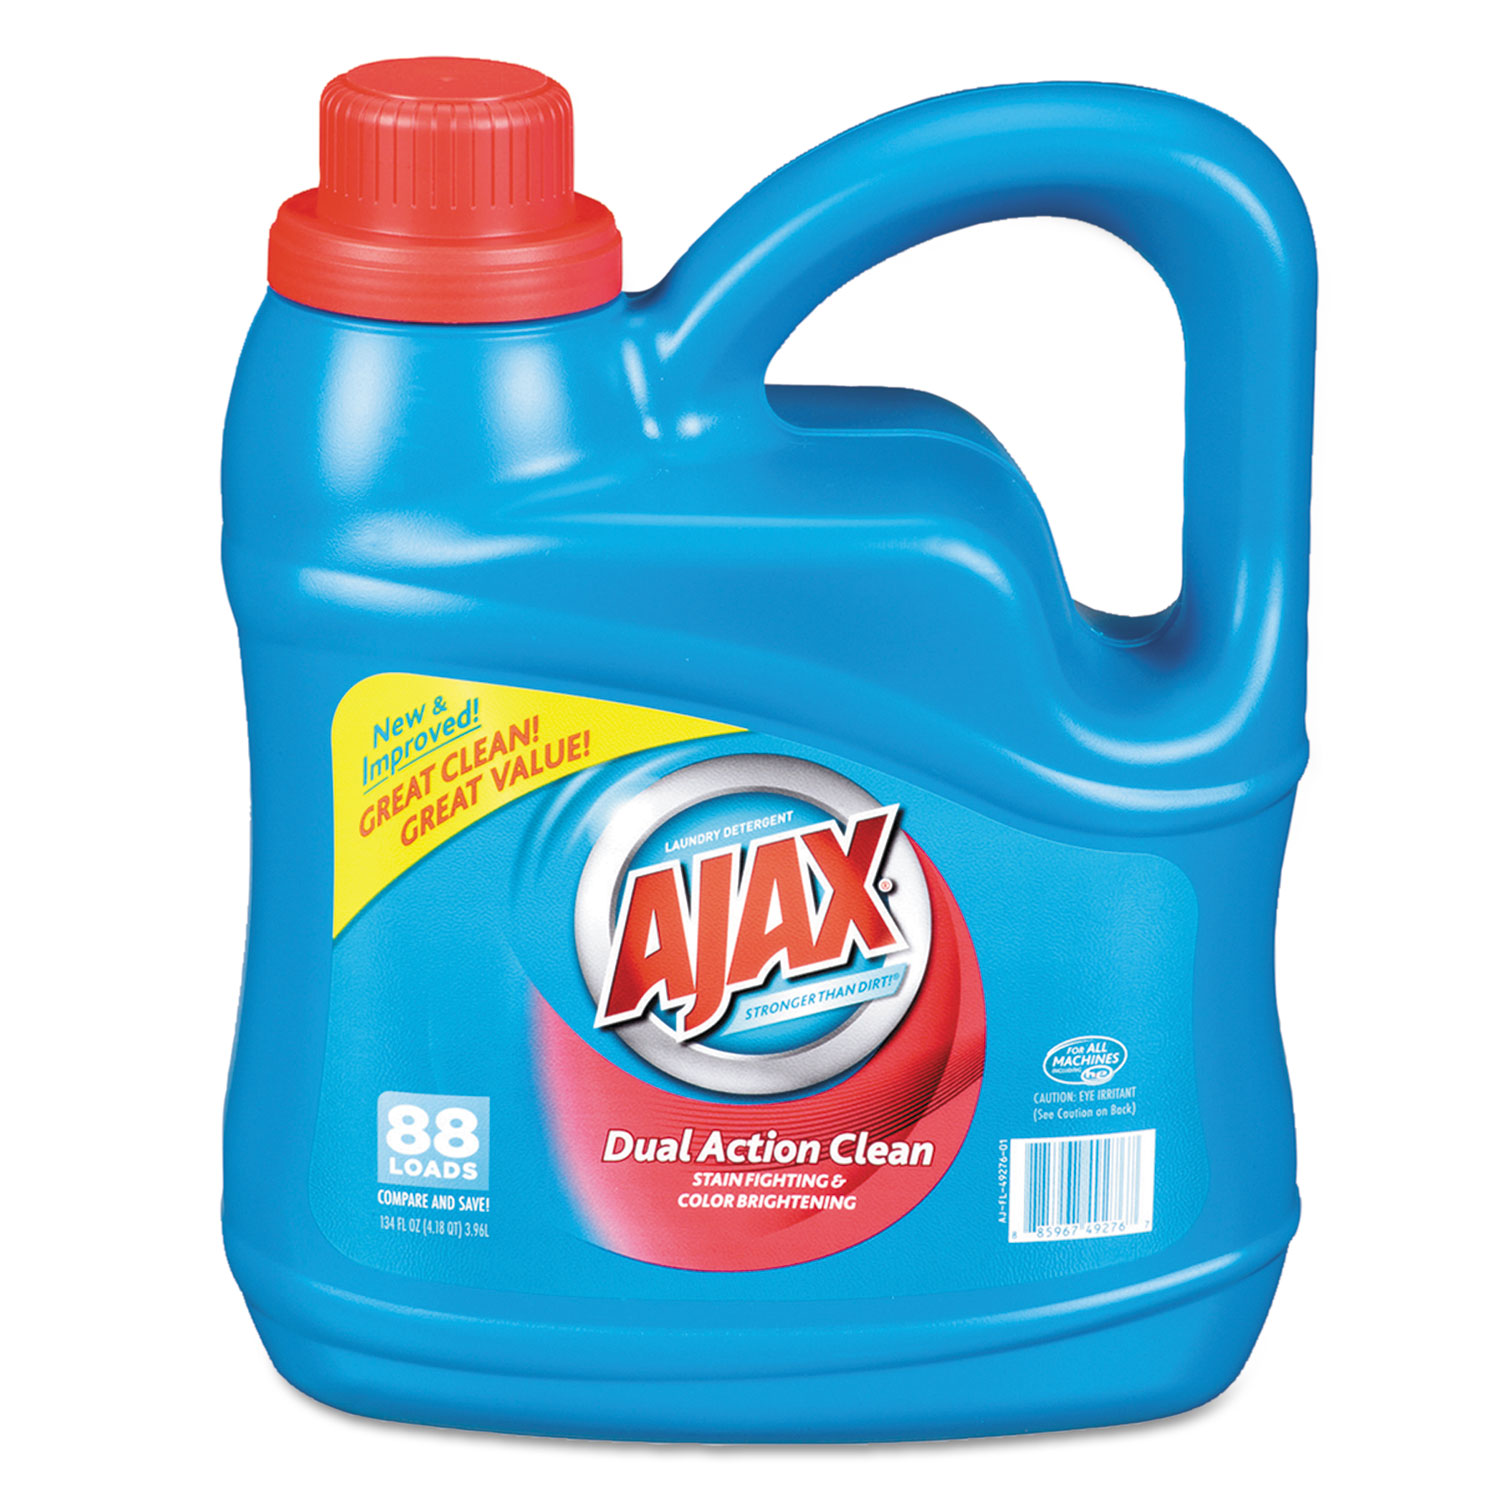 Dual Action Clean Liquid Laundry Detergent, Fresh Scent, 134 oz Bottle,